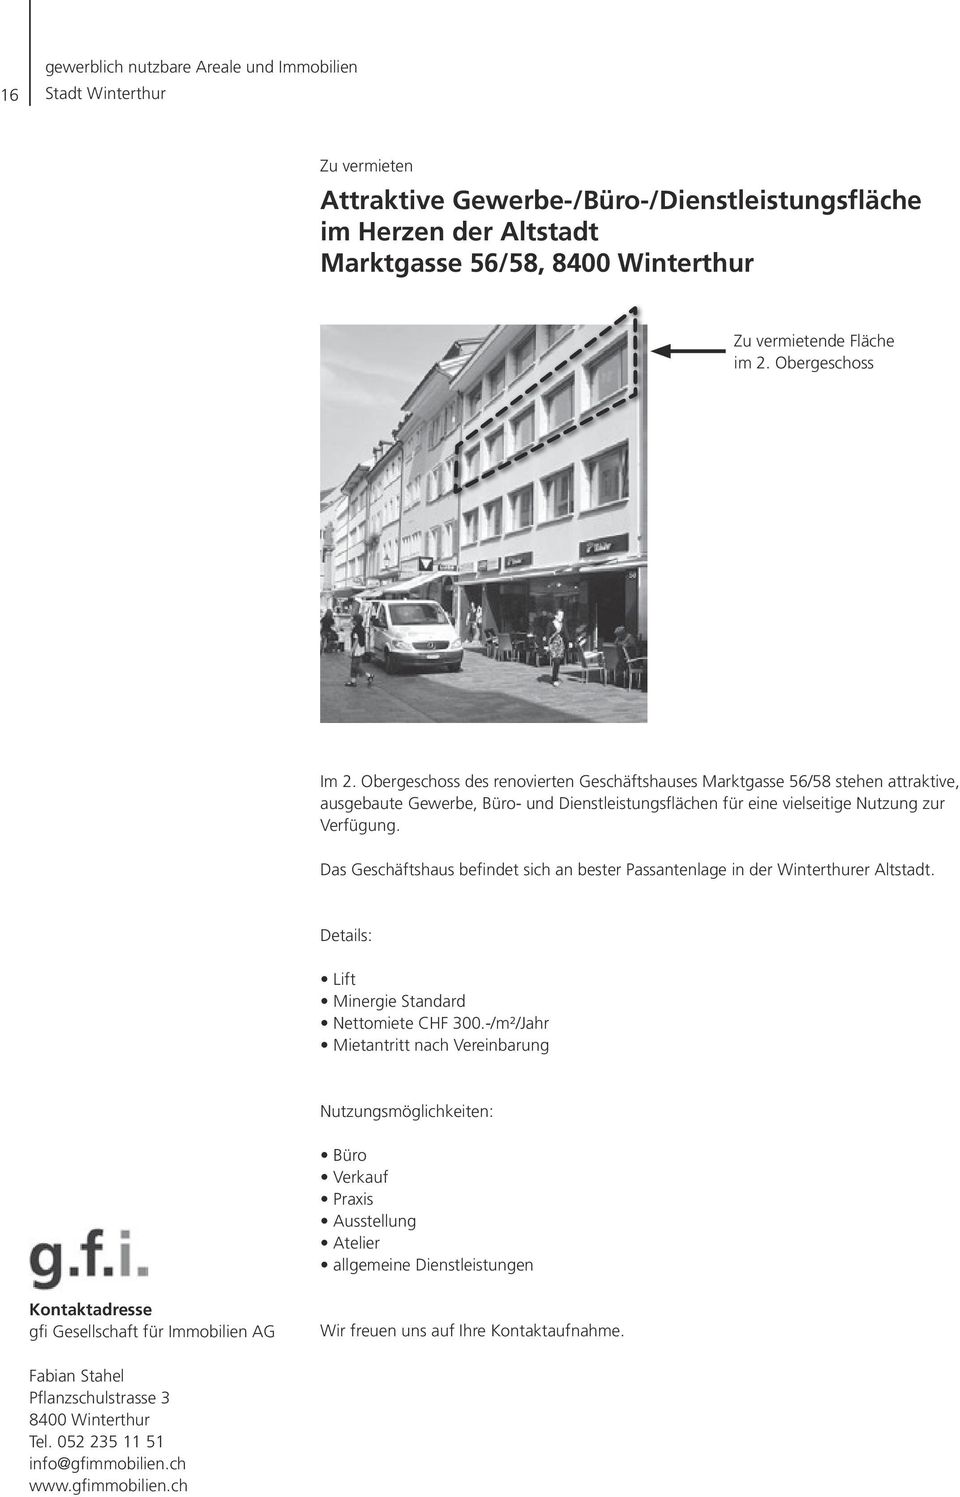 Das Geschäftshaus befindet sich an bester Passantenlage in der Winterthurer Altstadt. Details: Lift Minergie Standard Nettomiete CHF 300.